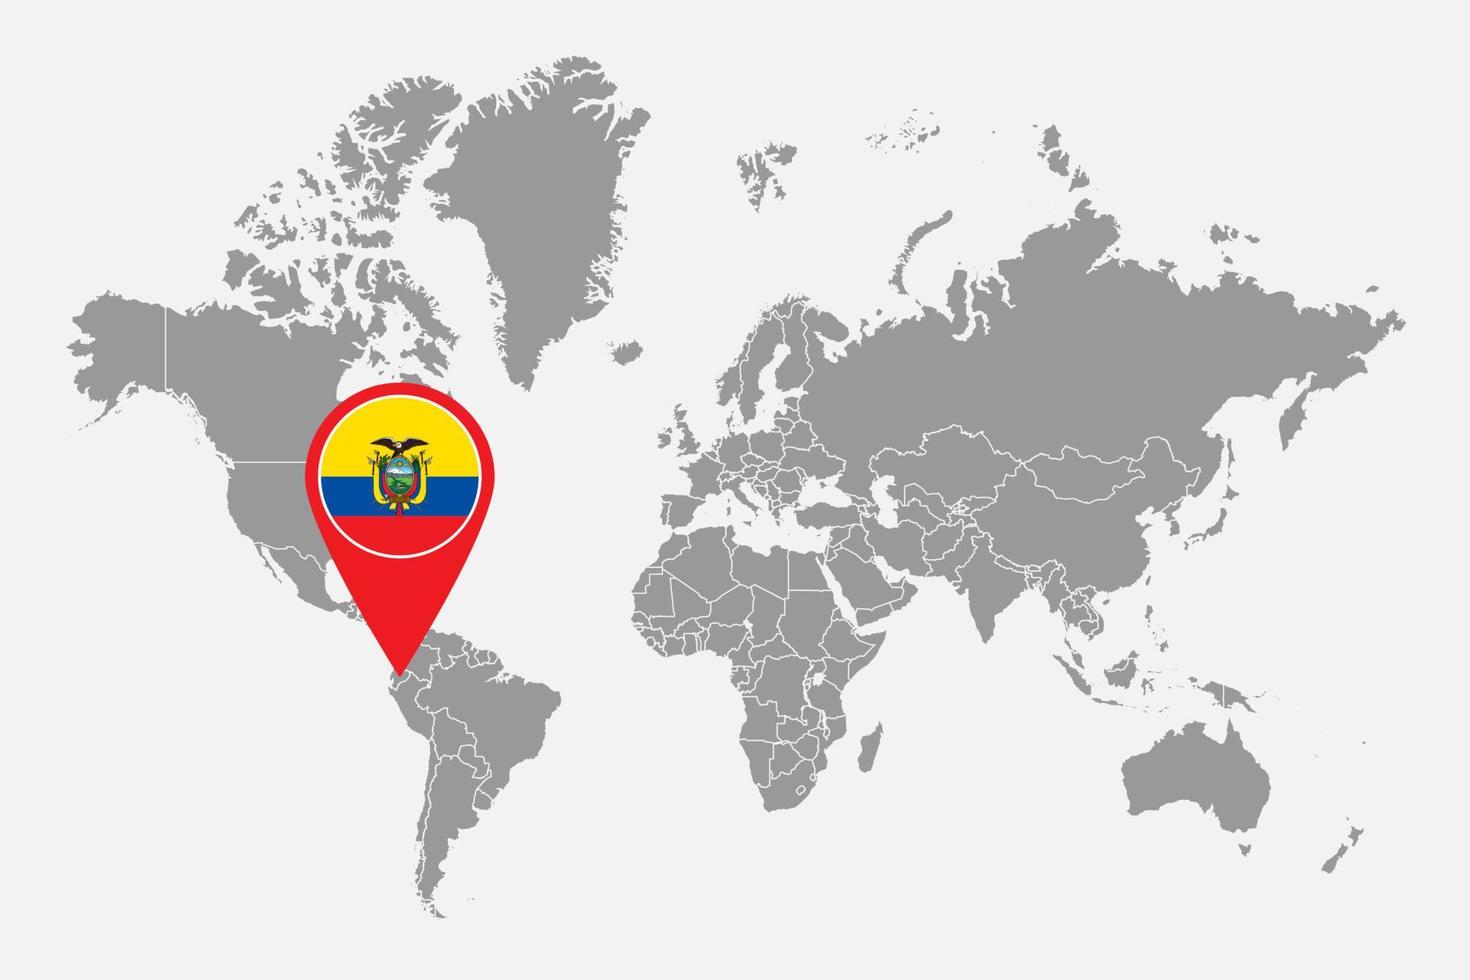 nålkarta med ecuadors flagga på världskartan. vektor illustration.